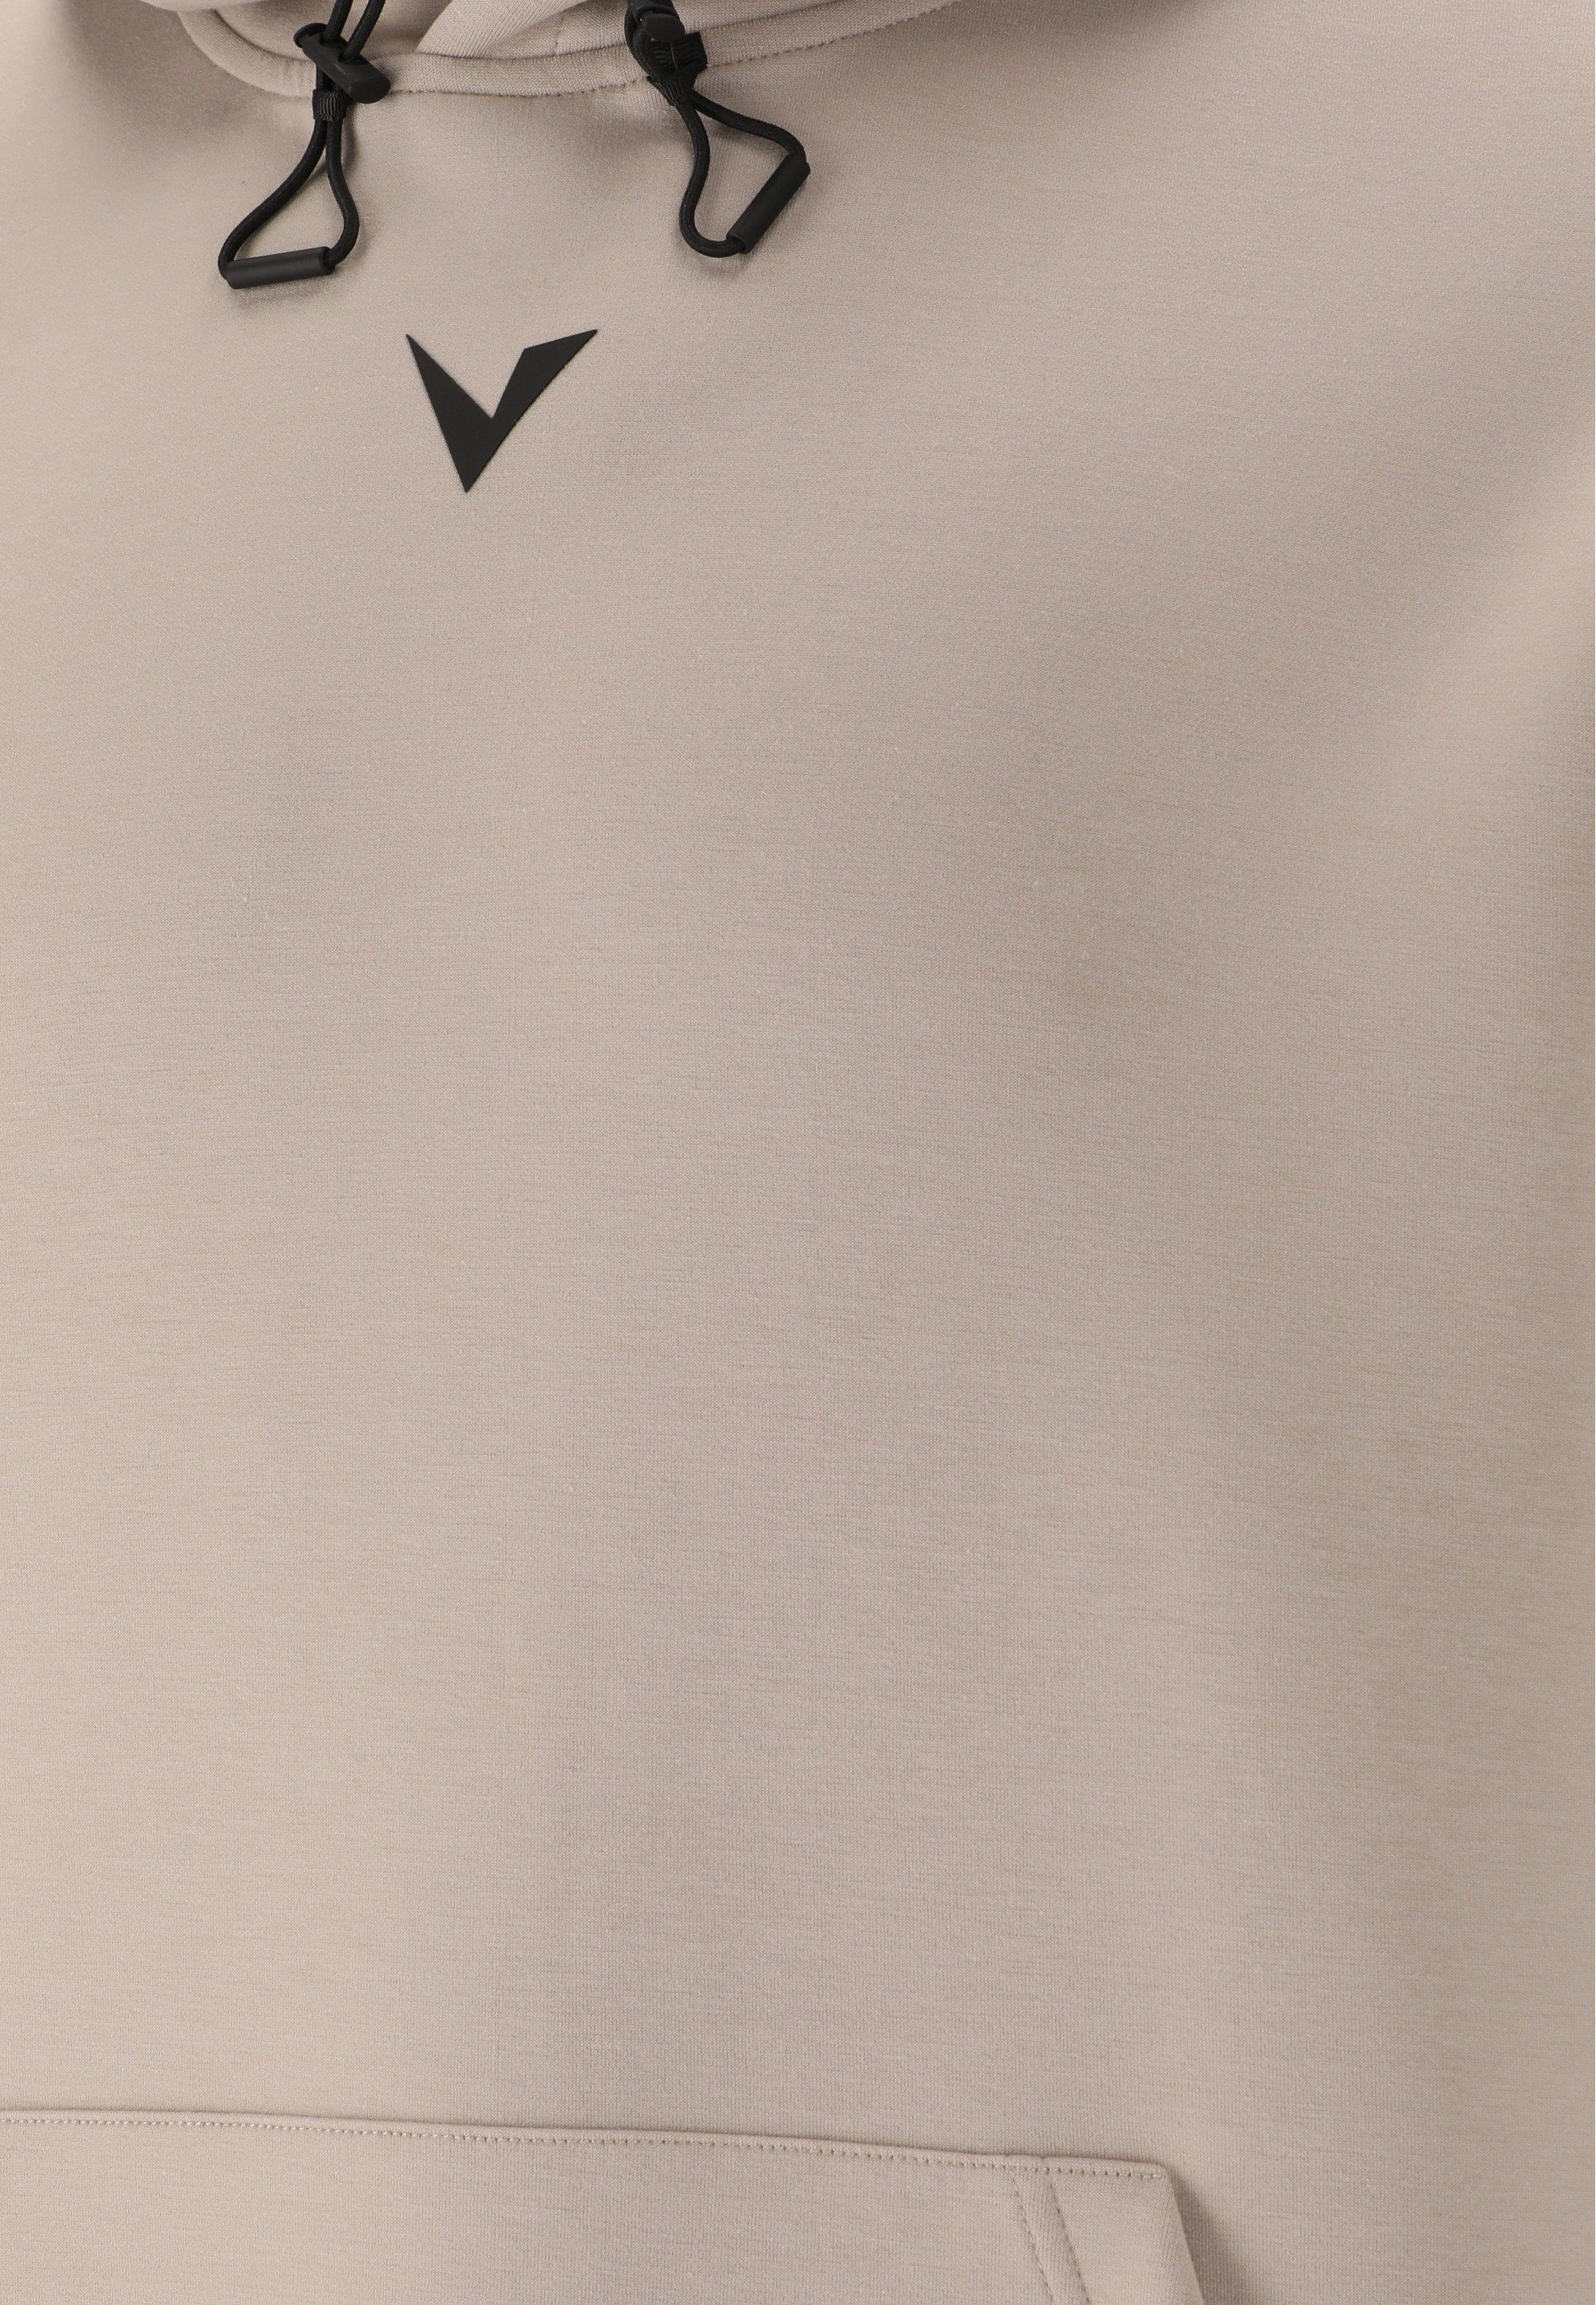 Sweatshirt Virtus Taro mit einstellbarer grau kuscheliger, Kapuze